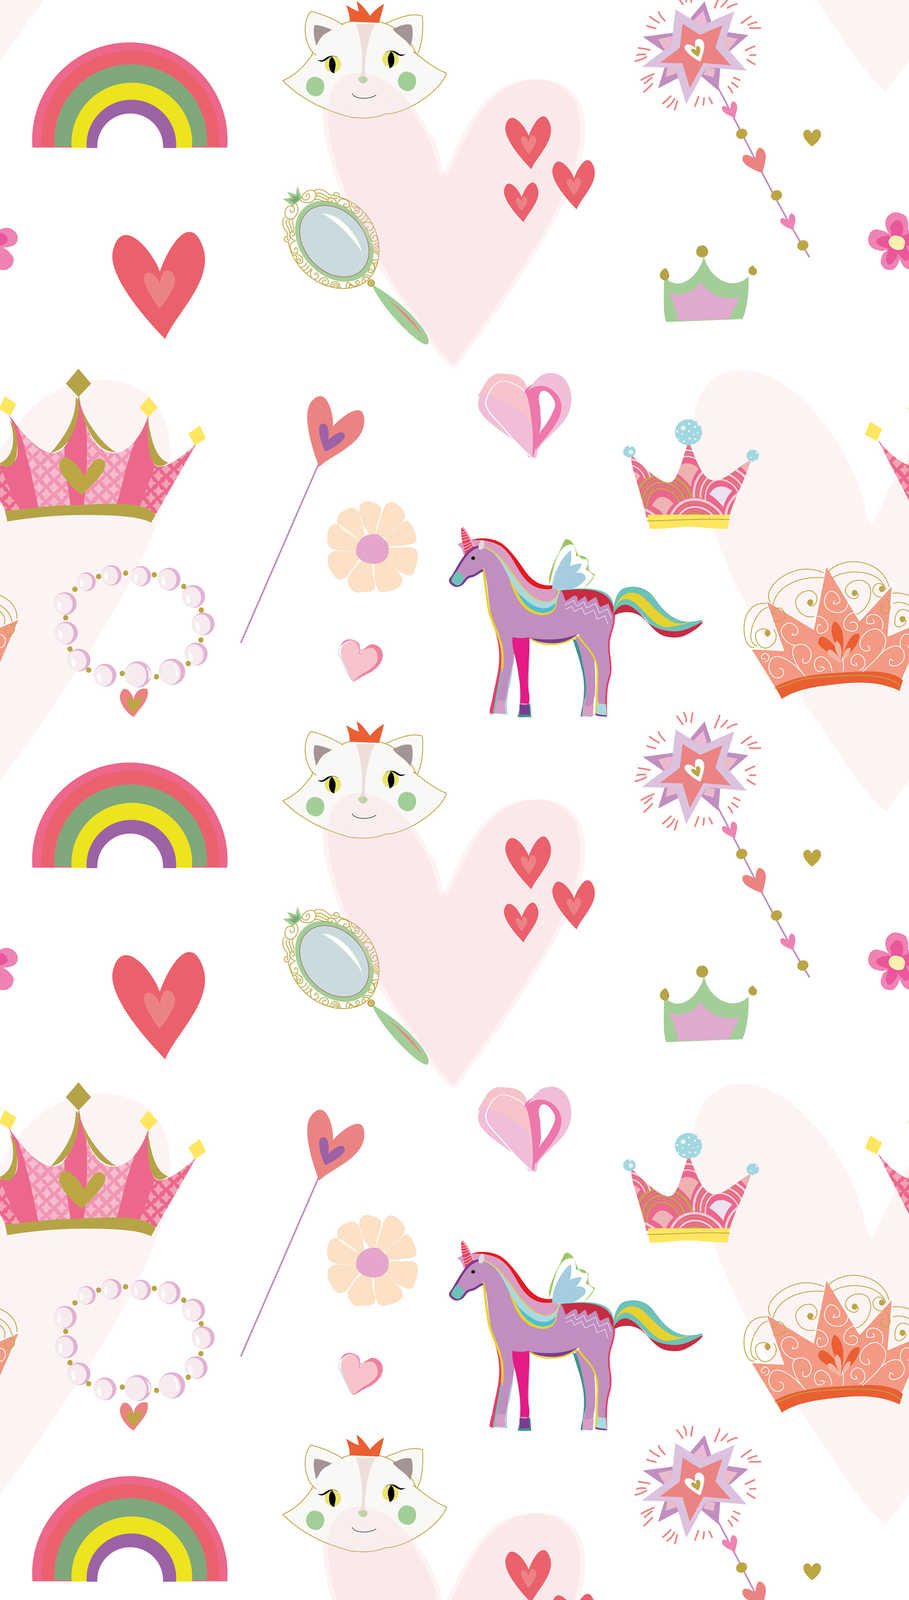             Kinderbehang in prinsessenstijl met harten en dieren - kleurrijk, roze, wit
        